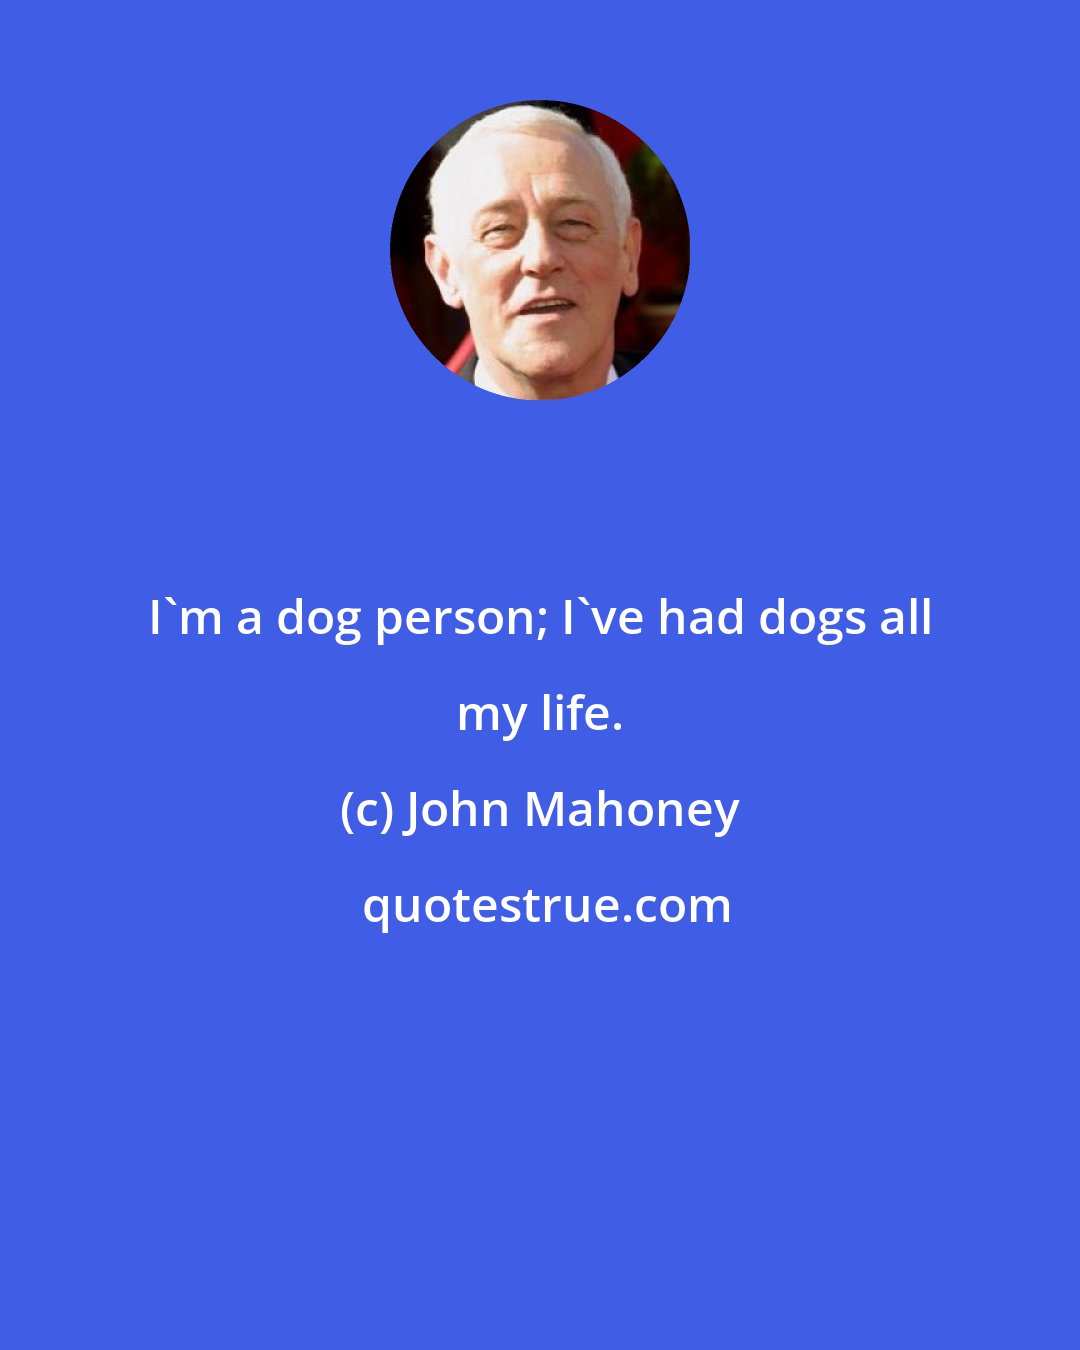 John Mahoney: I'm a dog person; I've had dogs all my life.